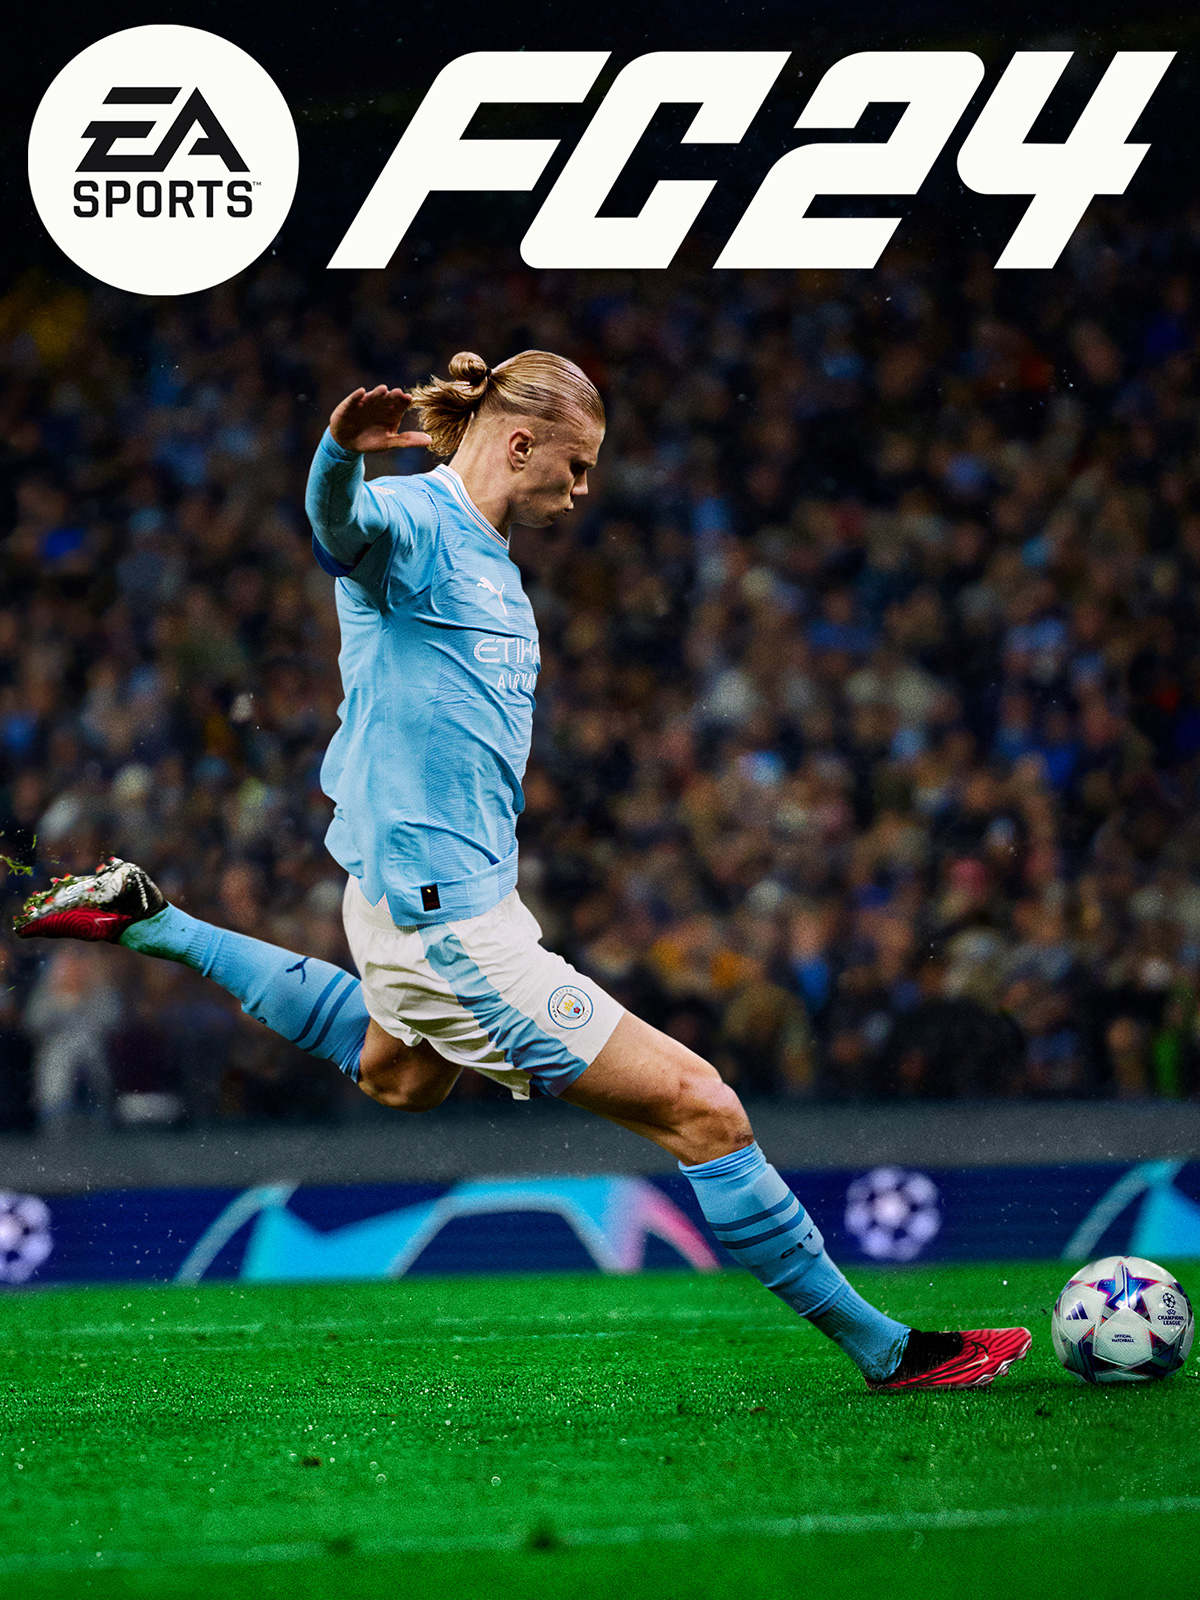 EA Sports FC 24 (FIFA 24) [PC, Цифровая версия] (Цифровая версия)